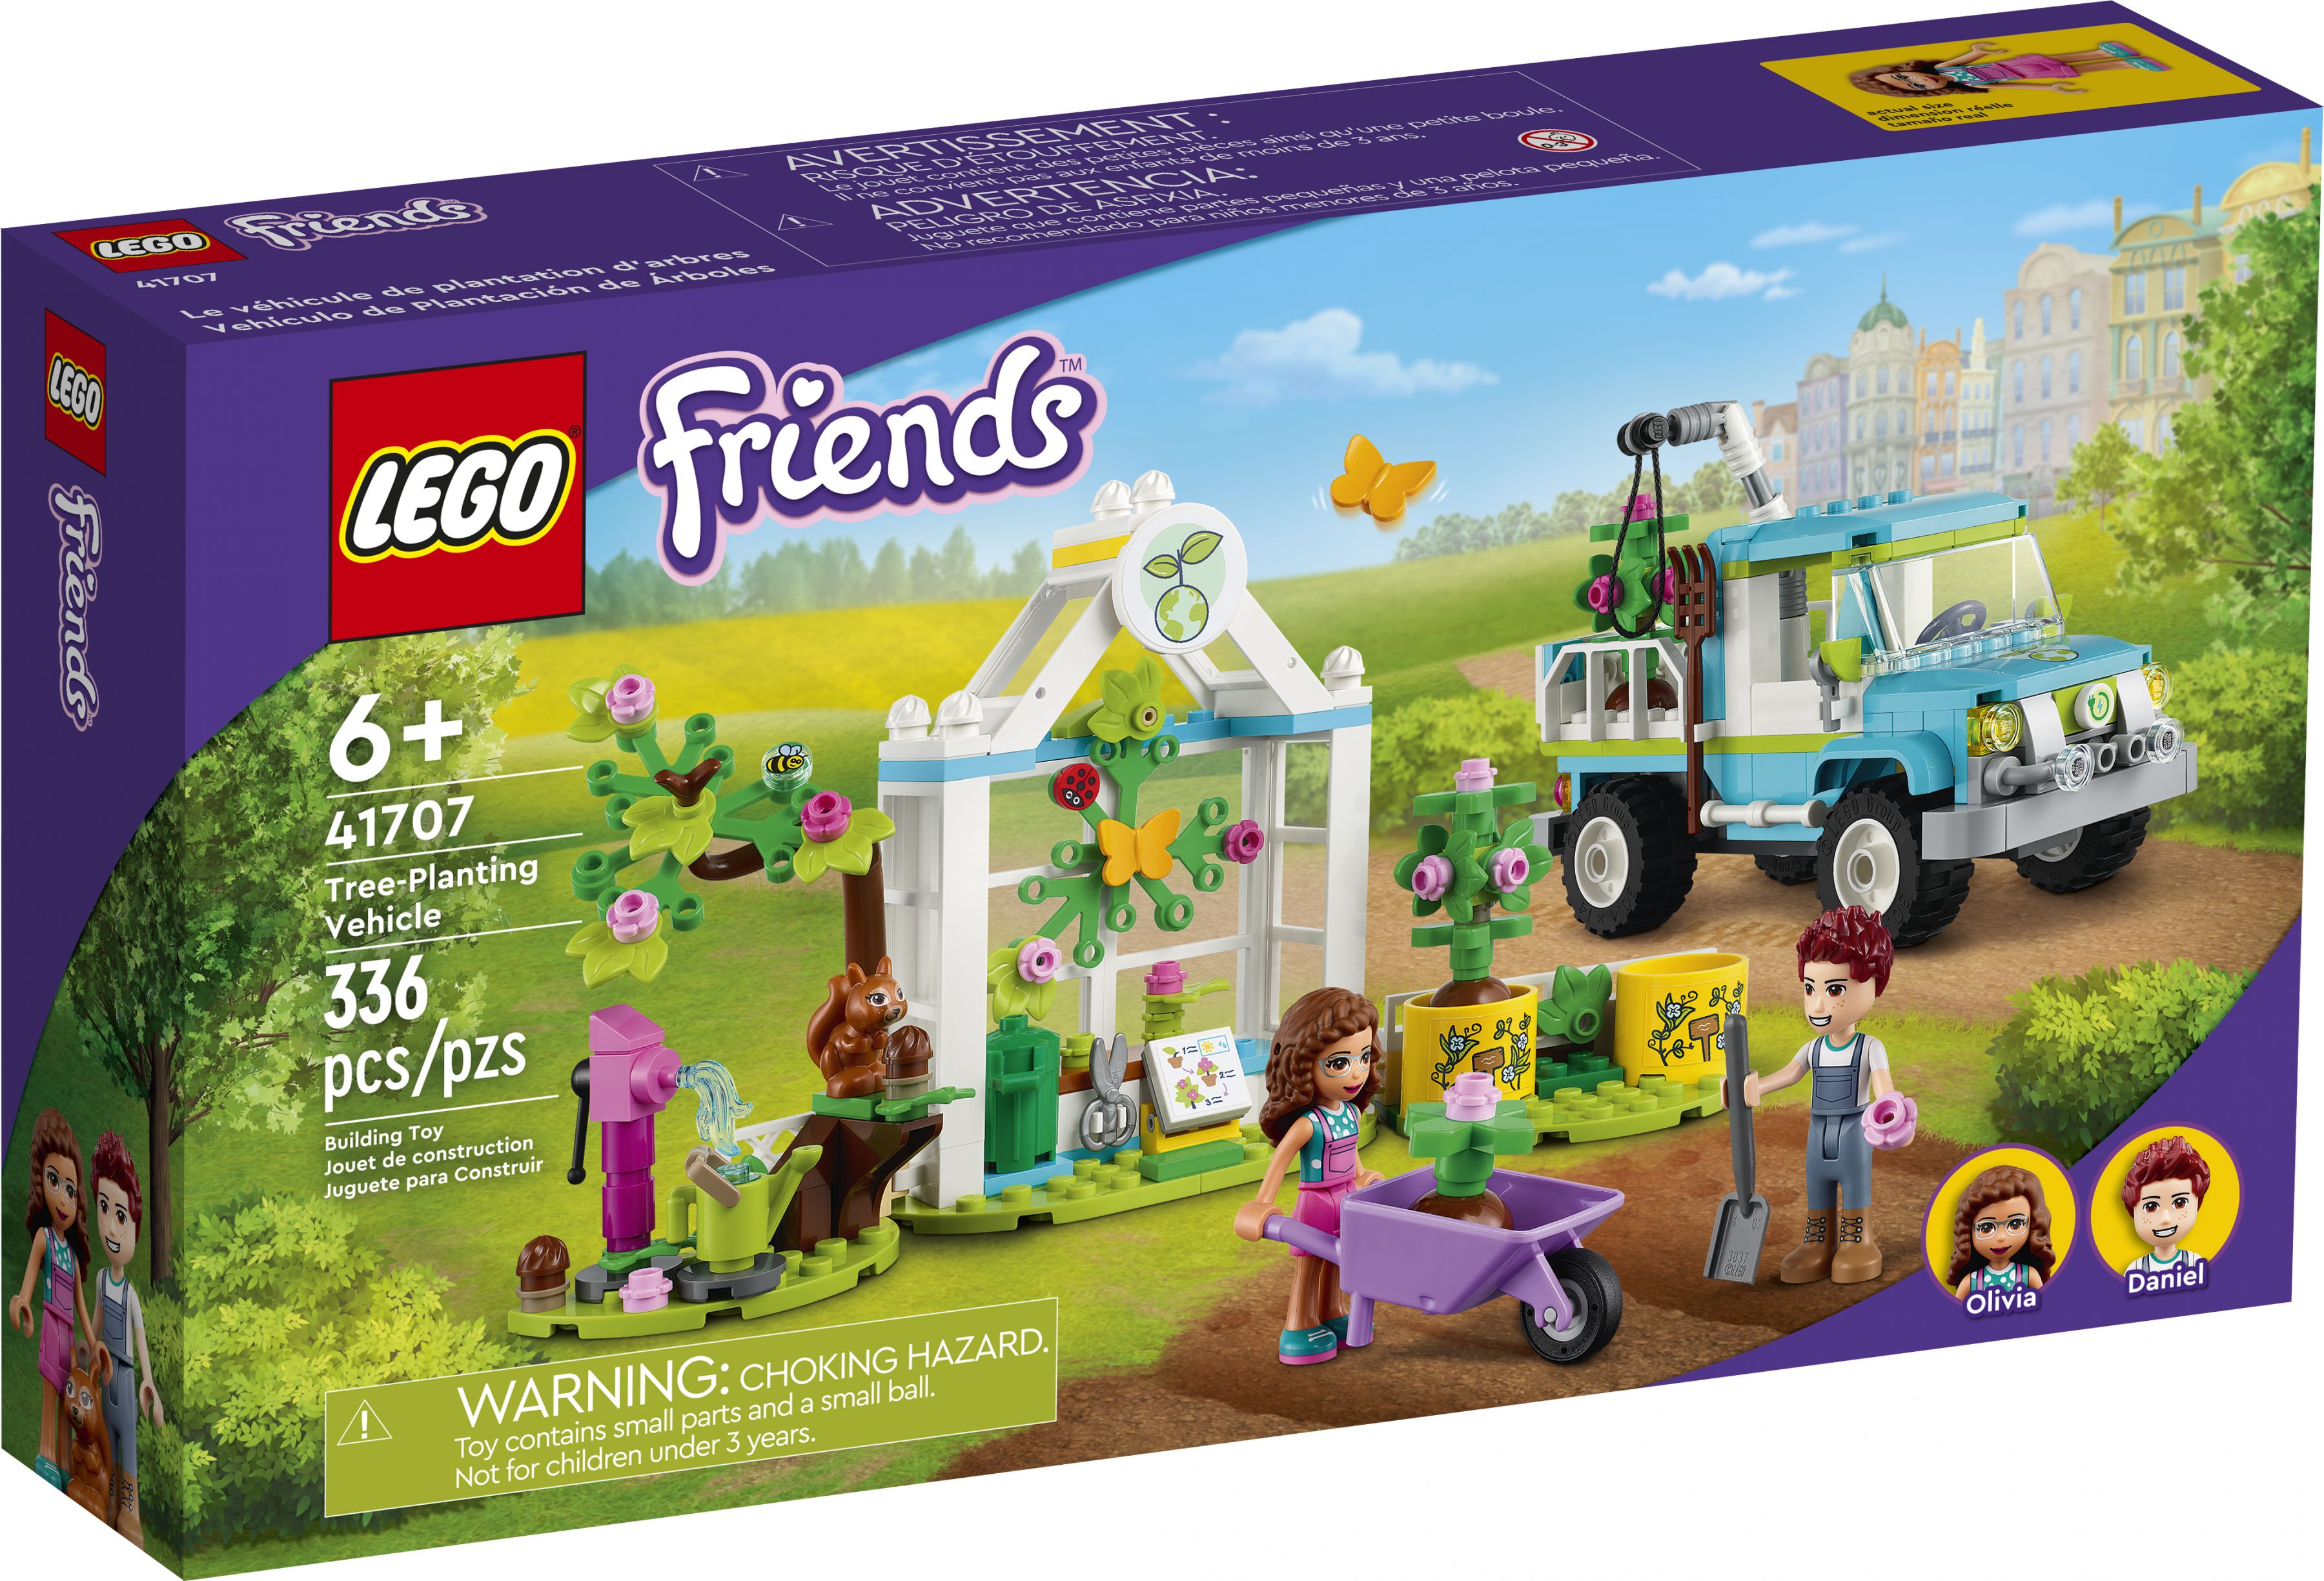 LEGO Friends 41707 Baumpflanzungsfahrzeug LEGO_41707_Box1_v39.jpg